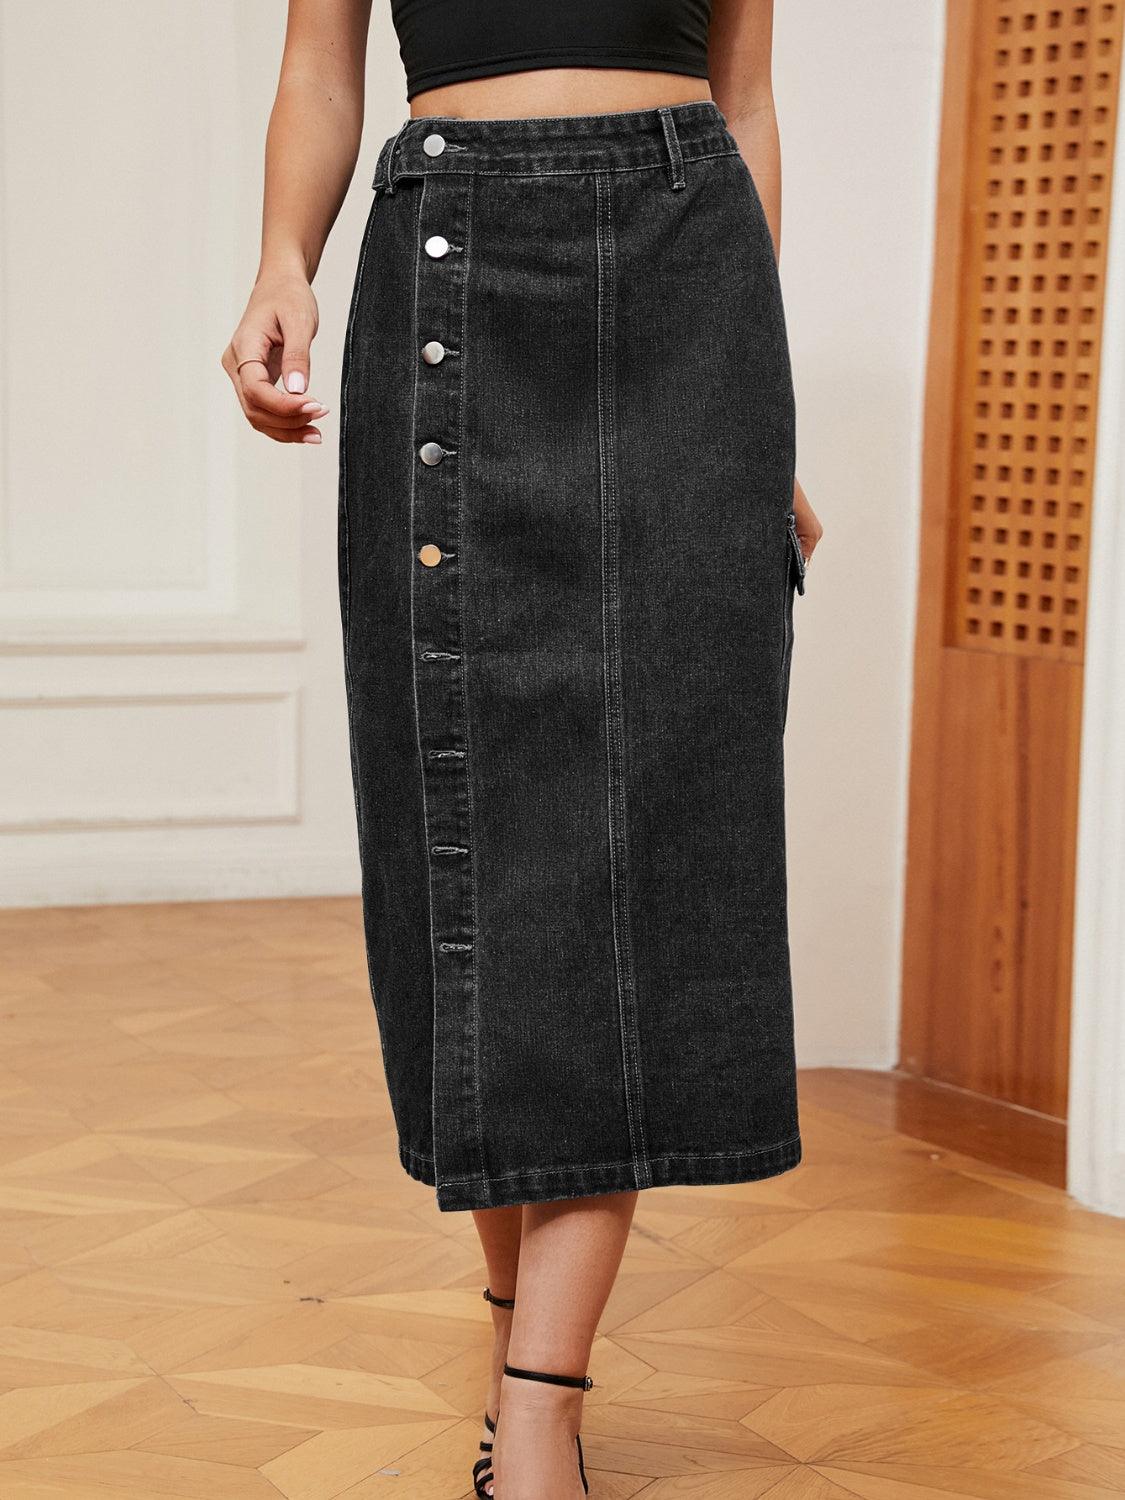 Button Down Denim Skirt - Lab Fashion, Home & Health